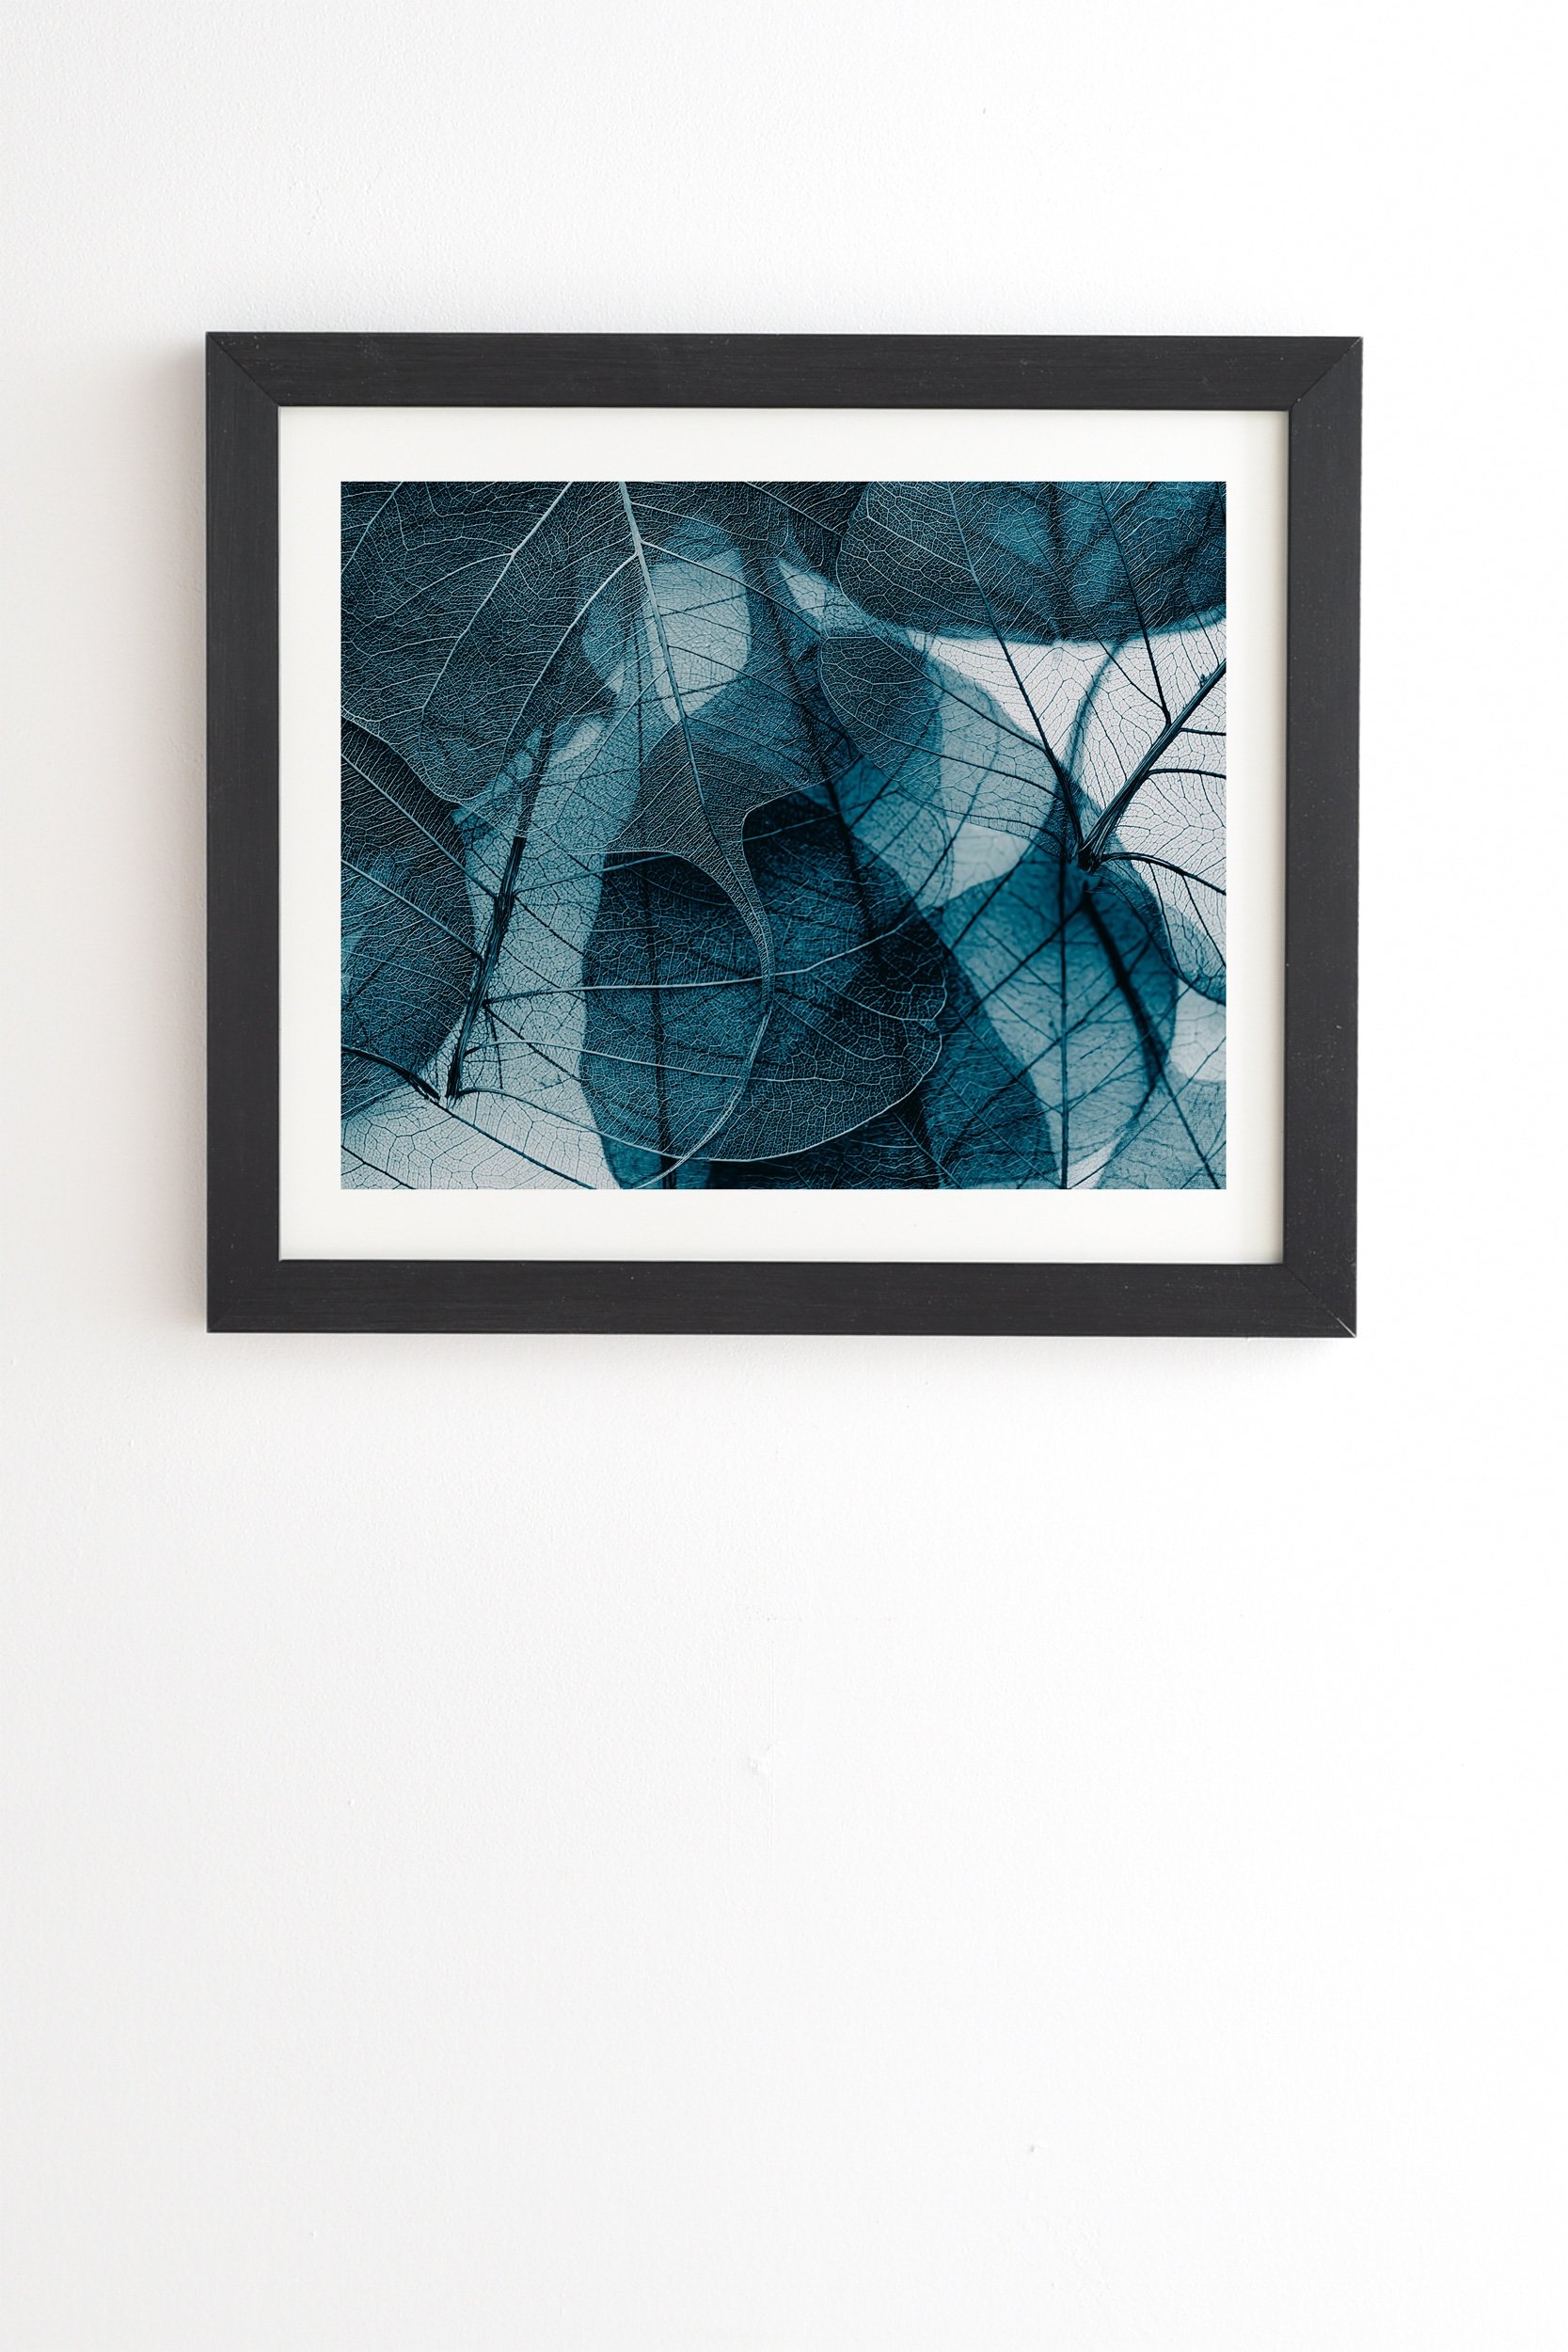 Ingrid Beddoes Denim blue Black Framed Wall Art - 19" x 22.4" - Image 0